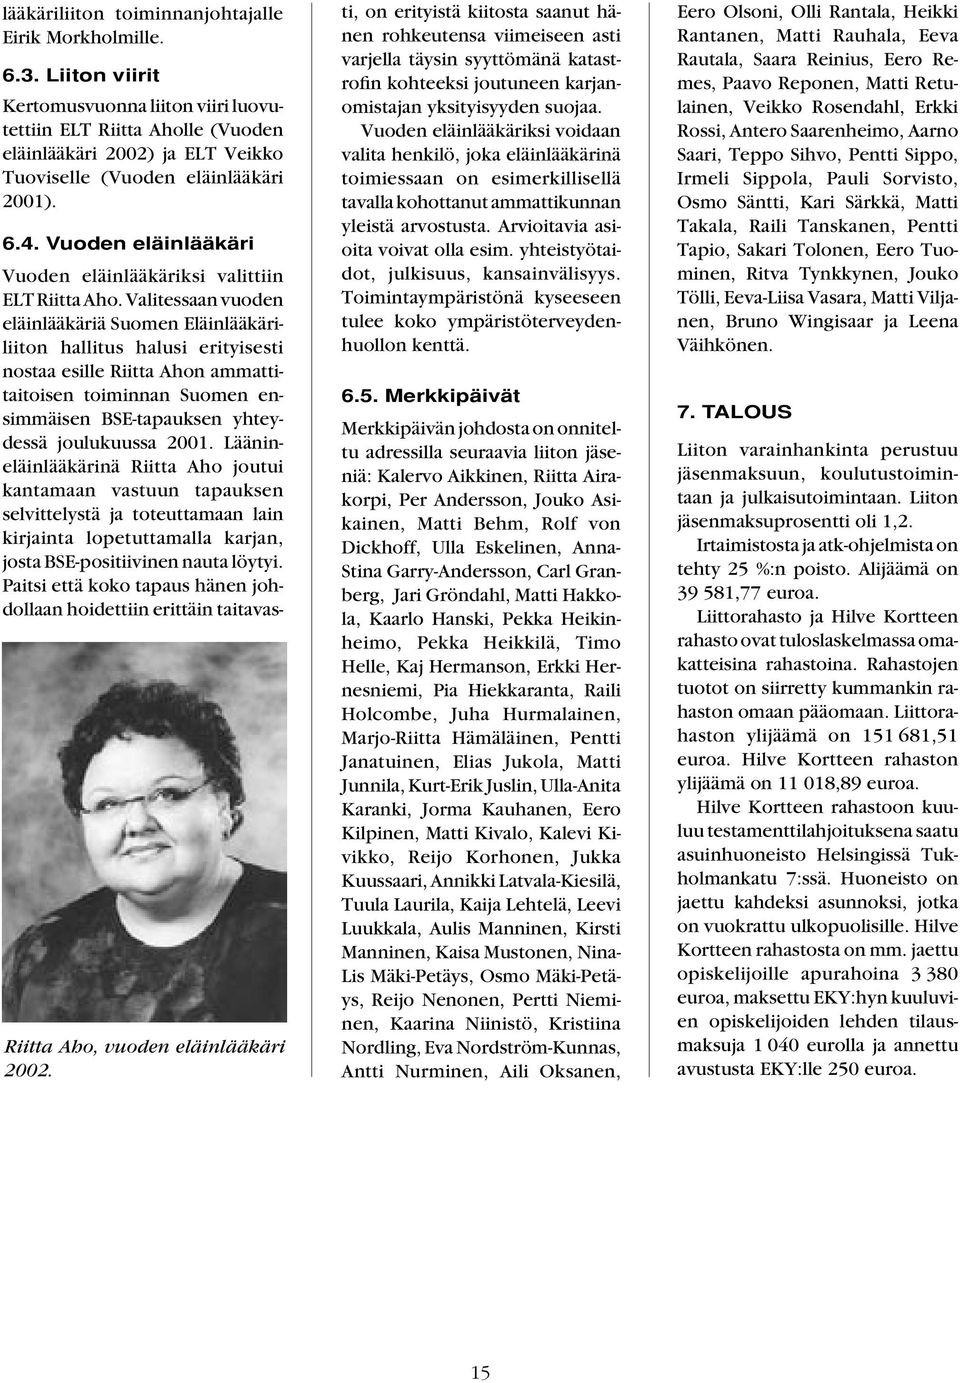 Vuoden eläinlääkäri Riitta Aho, vuoden eläinlääkäri 2002. Vuoden eläinlääkäriksi valittiin ELT Riitta Aho.